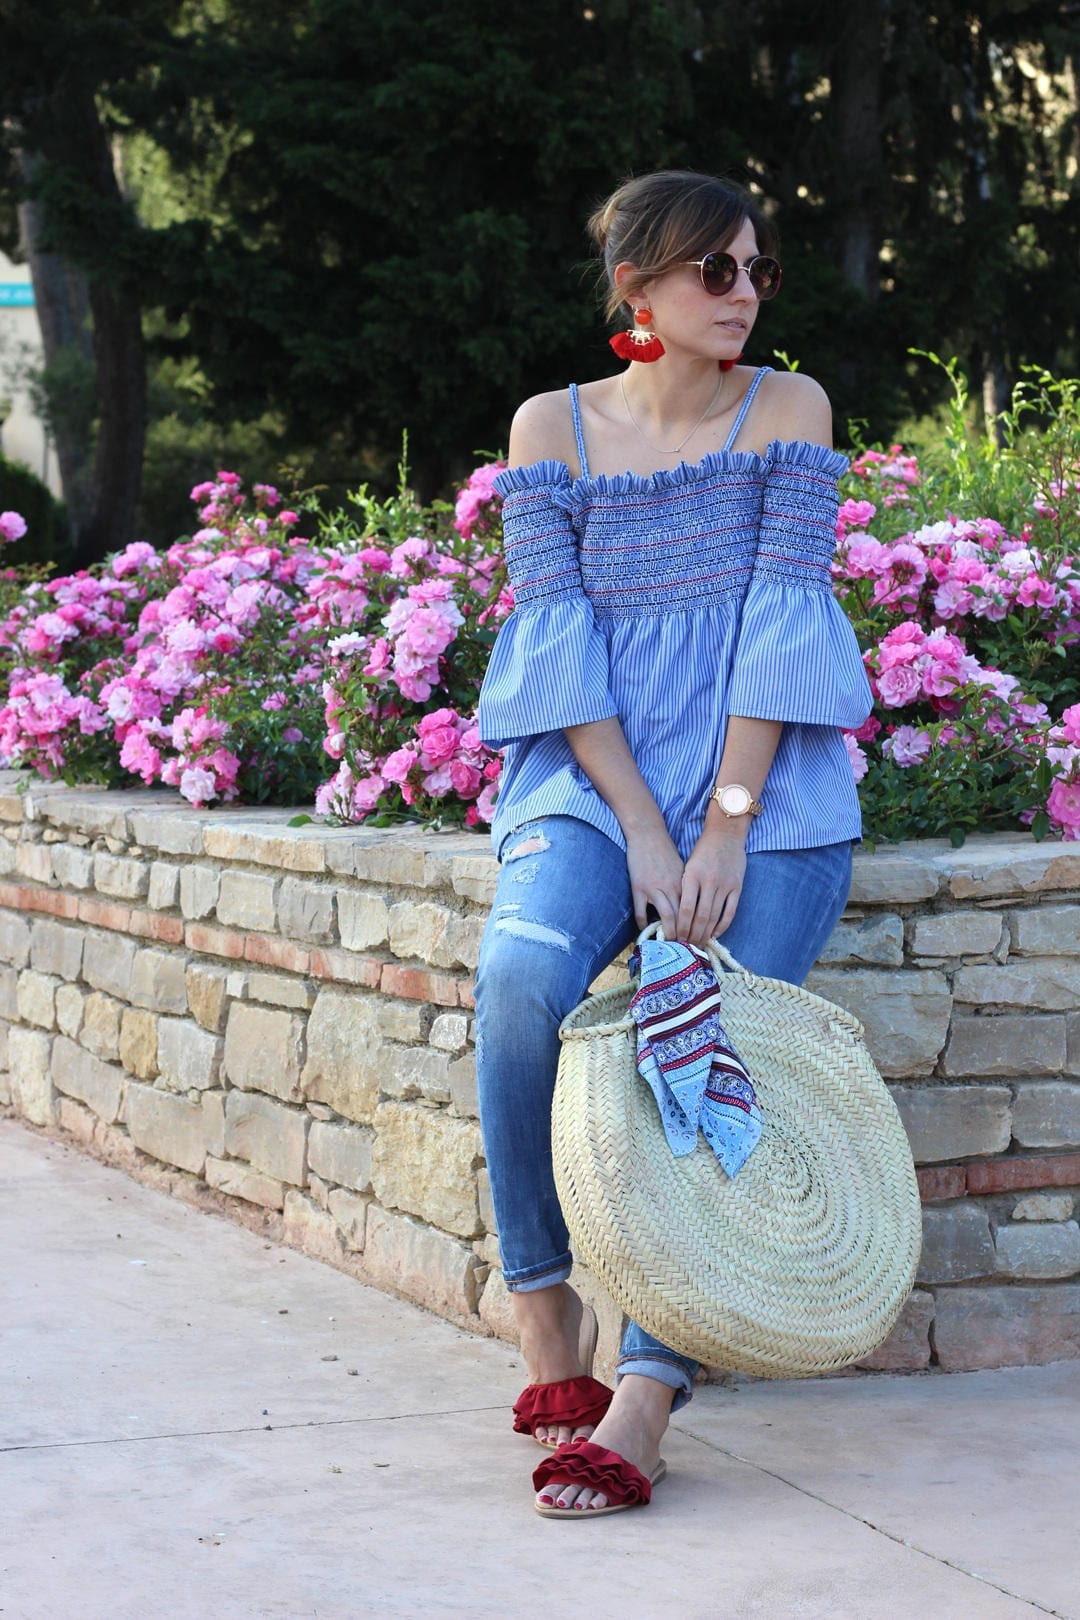 blogger moda sandalias rojas Forever 21 top azul tienda Valvoa Moda Zaragoza